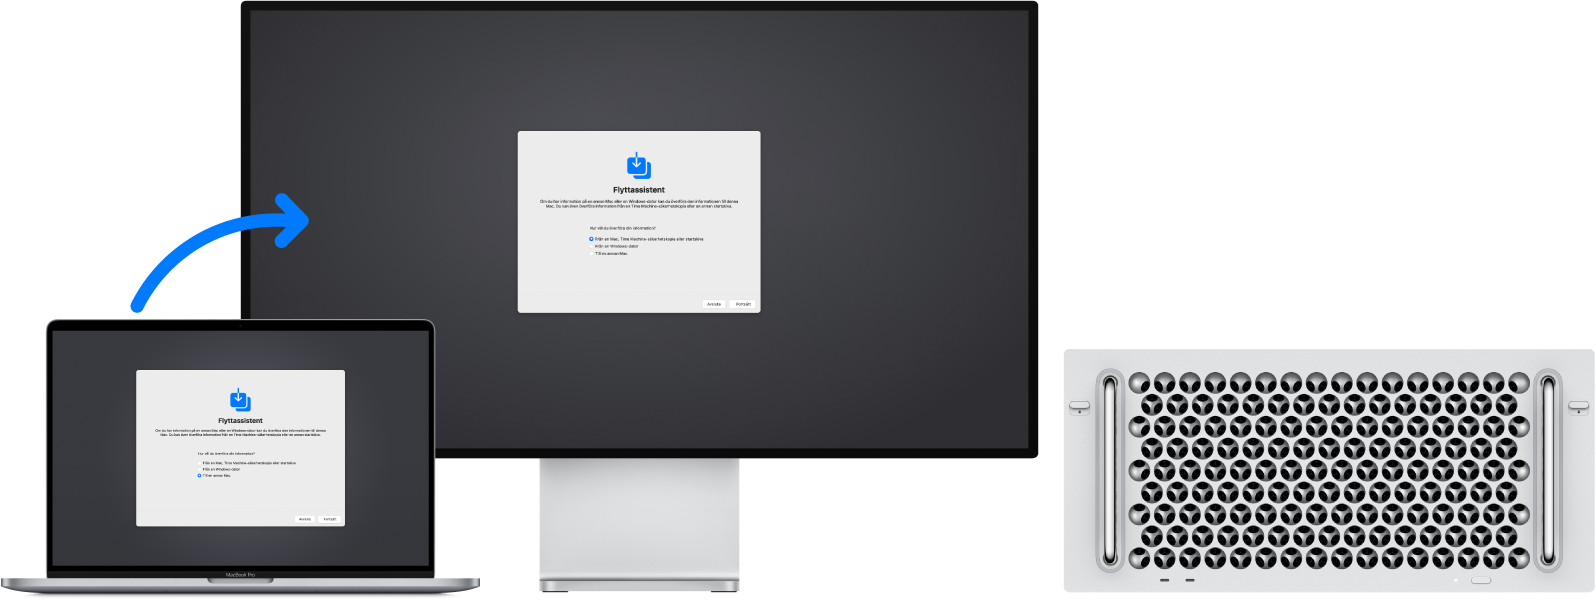 En MacBook Pro och en Mac Pro som båda visar Flyttassistent-skärmen. En pil från MacBook Pro till Mac Pro visar överföringen av data från den ena till den andra.